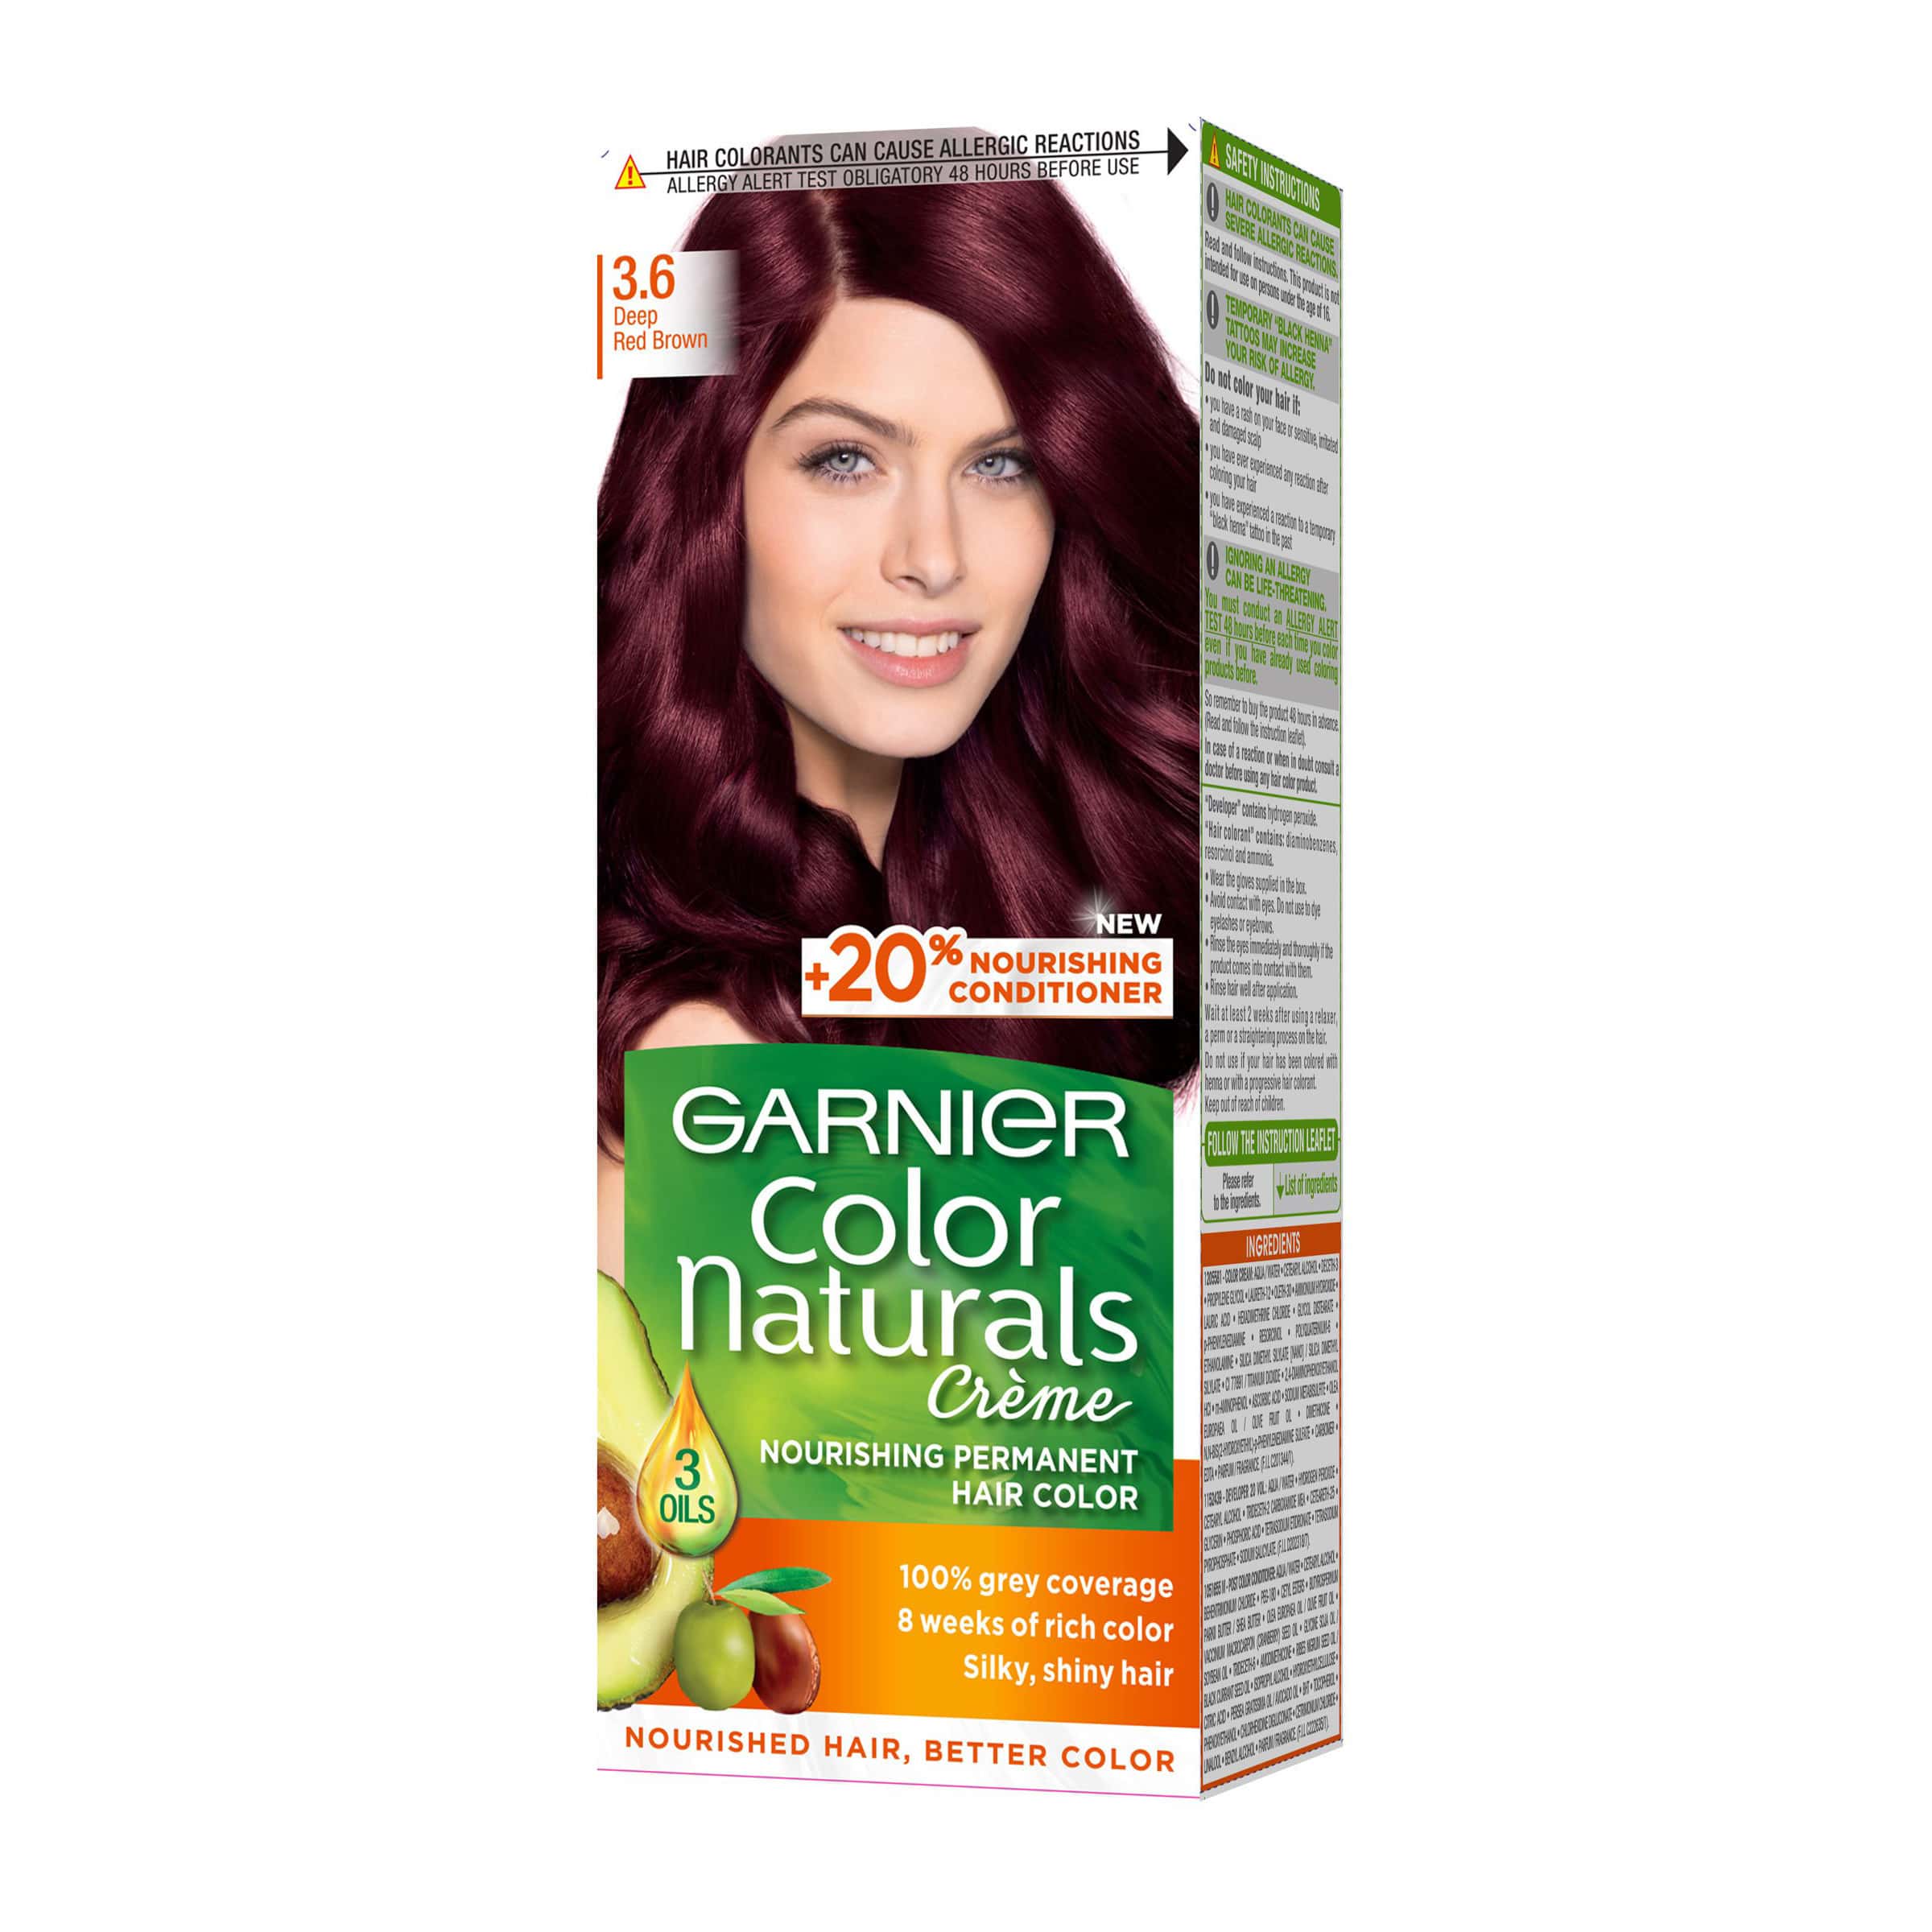 Гарньер 5 1/2. Garnier Color naturals 6.3. 3.61 Стойкая крем-краска для волос "Color naturals". Garnier Mahagony Colours.